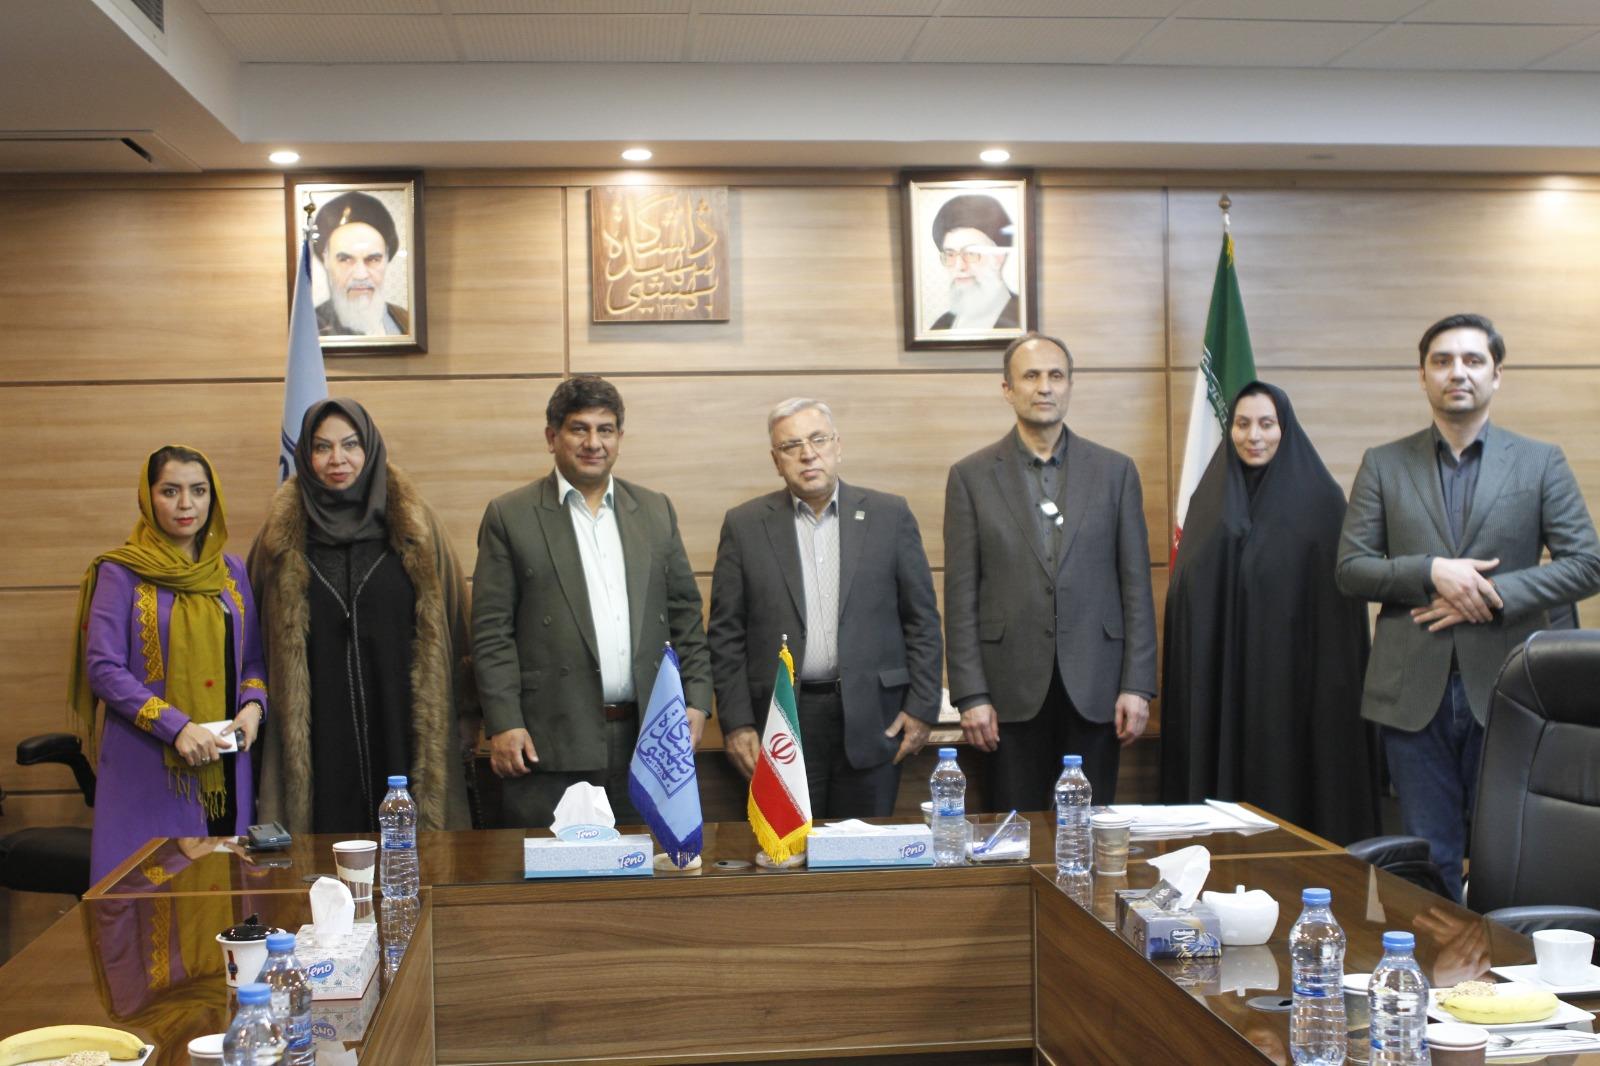 دیدار رئیس موسسه فرهنگی اکو با رئیس دانشگاه شهید بهشتی